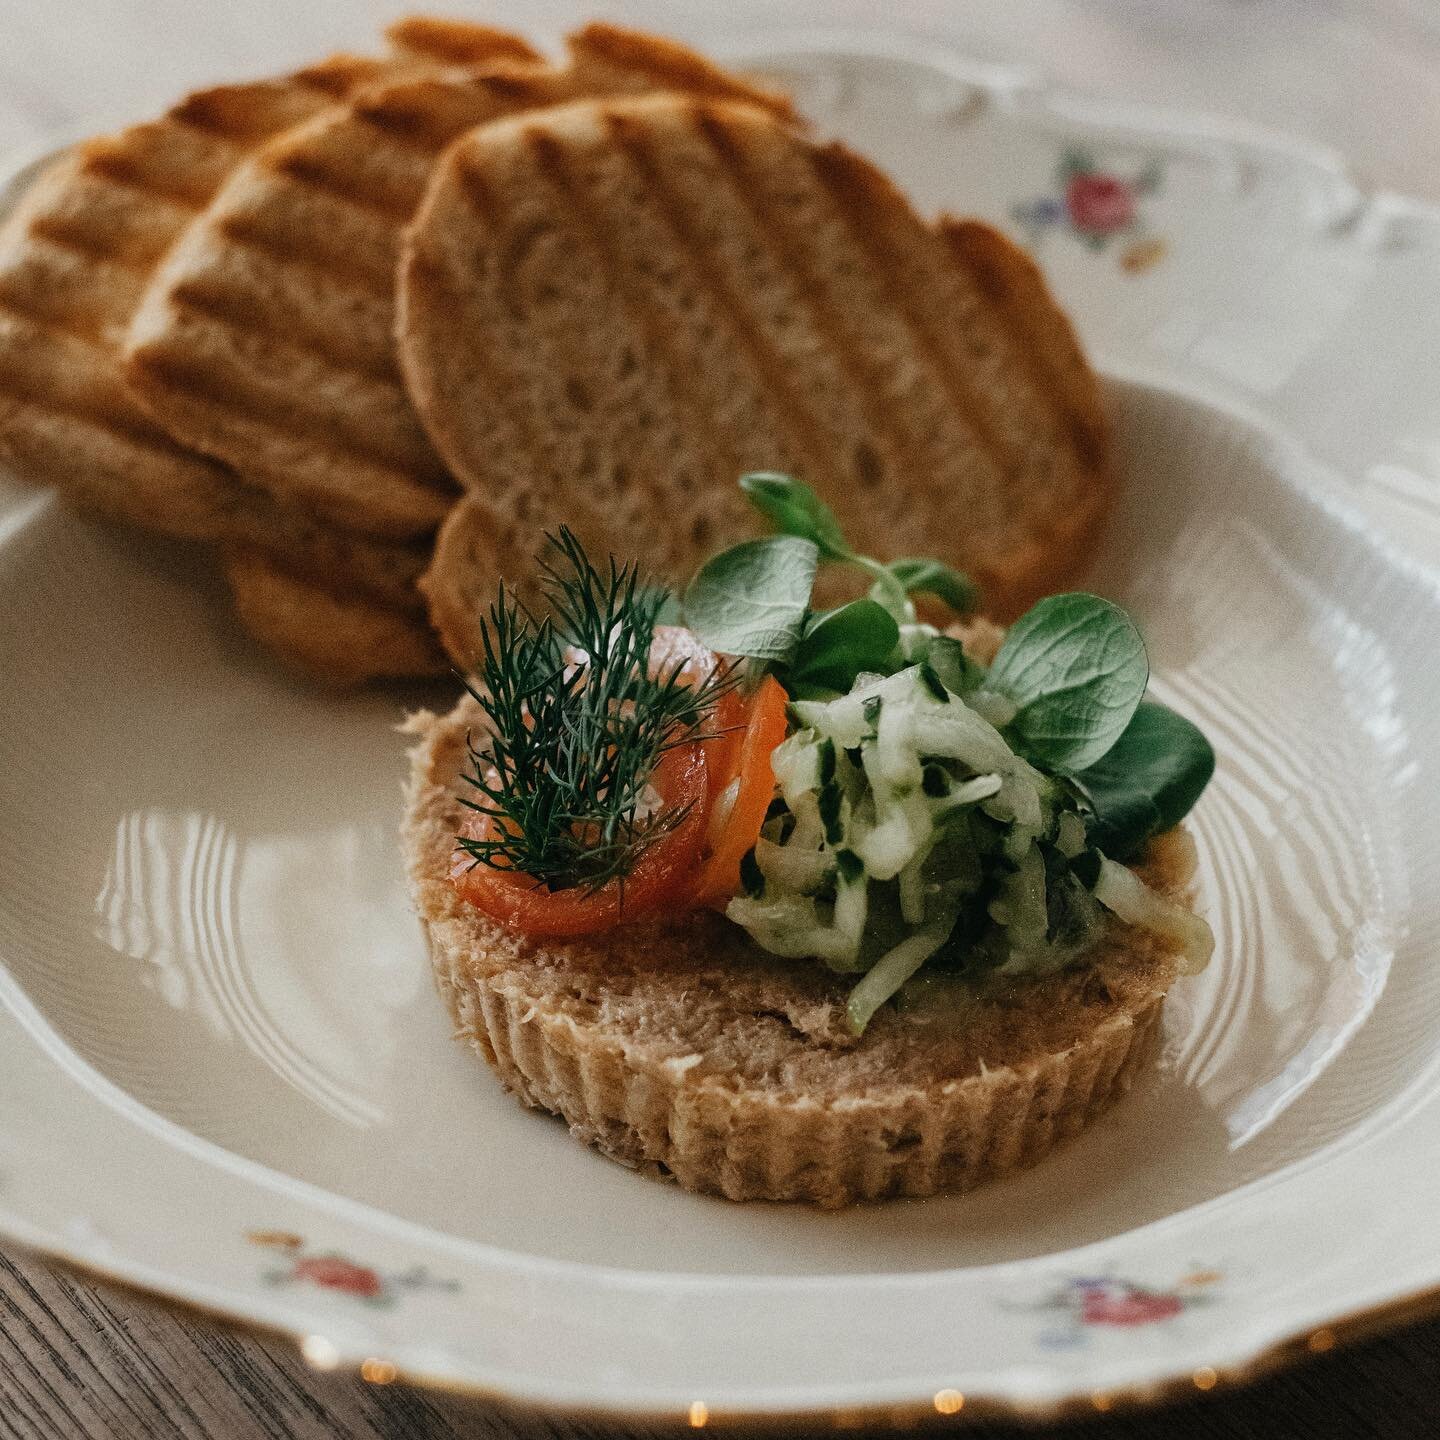 Bij Nik&rsquo;s heb je niet alleen maar broodjes of ei, maar ook lekkere to share gerechten waaronder deze gerookte makreel! 

#bijniks #toshare #keizerstraatscheveningen #homemadegoods #scheveningen #borrel #ontbijt #lunch